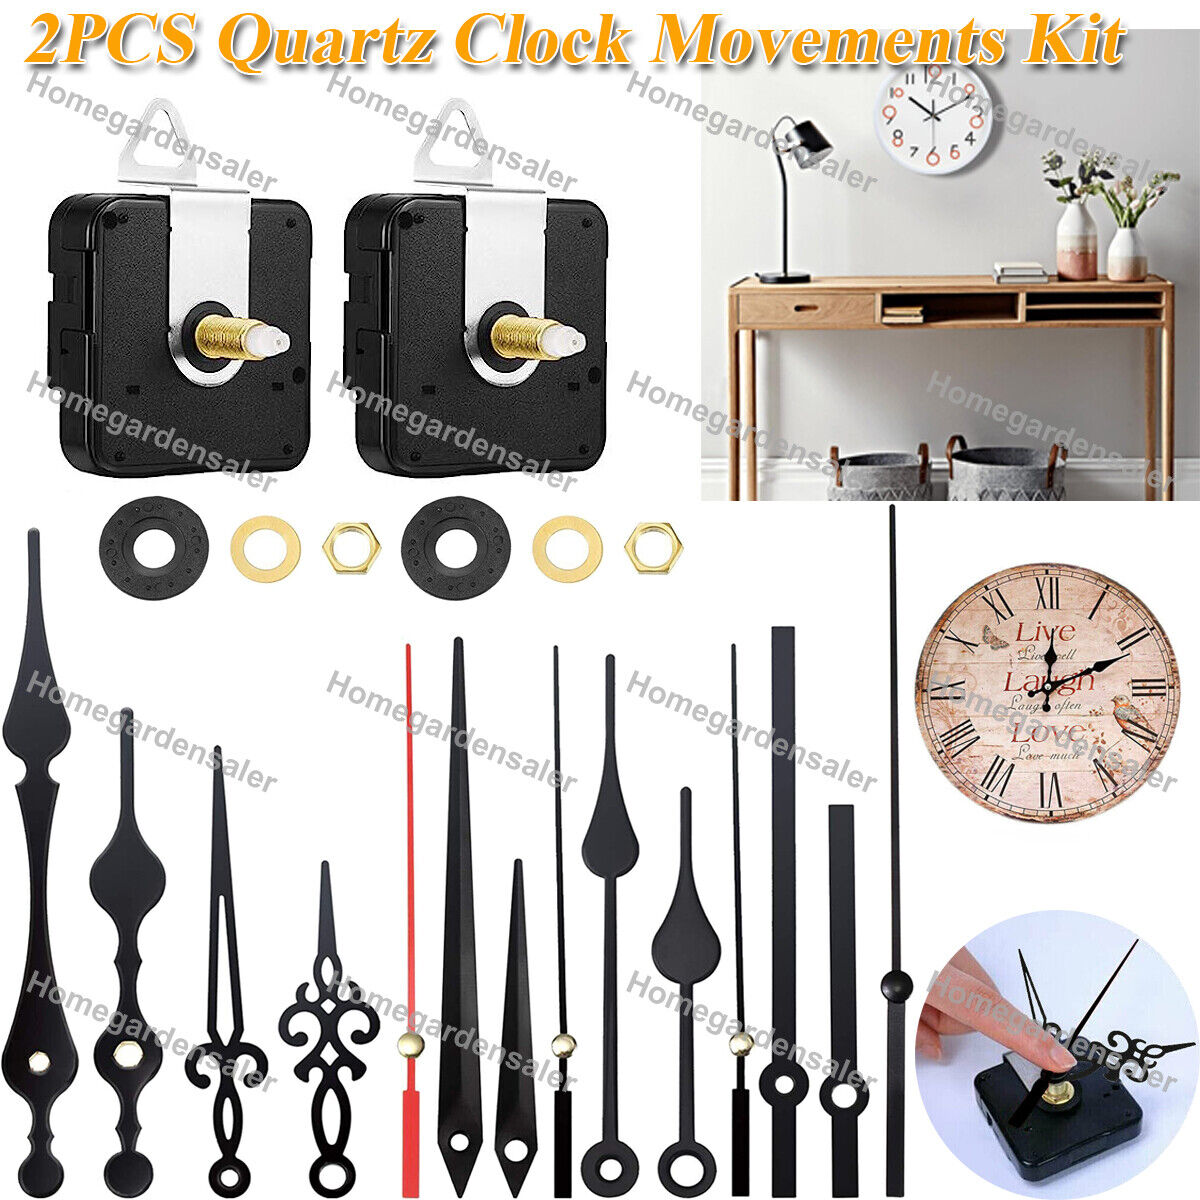 2PCS Quartz Wall Clock Movements Kit DIY Hands Motor Repair Parts Replacement US